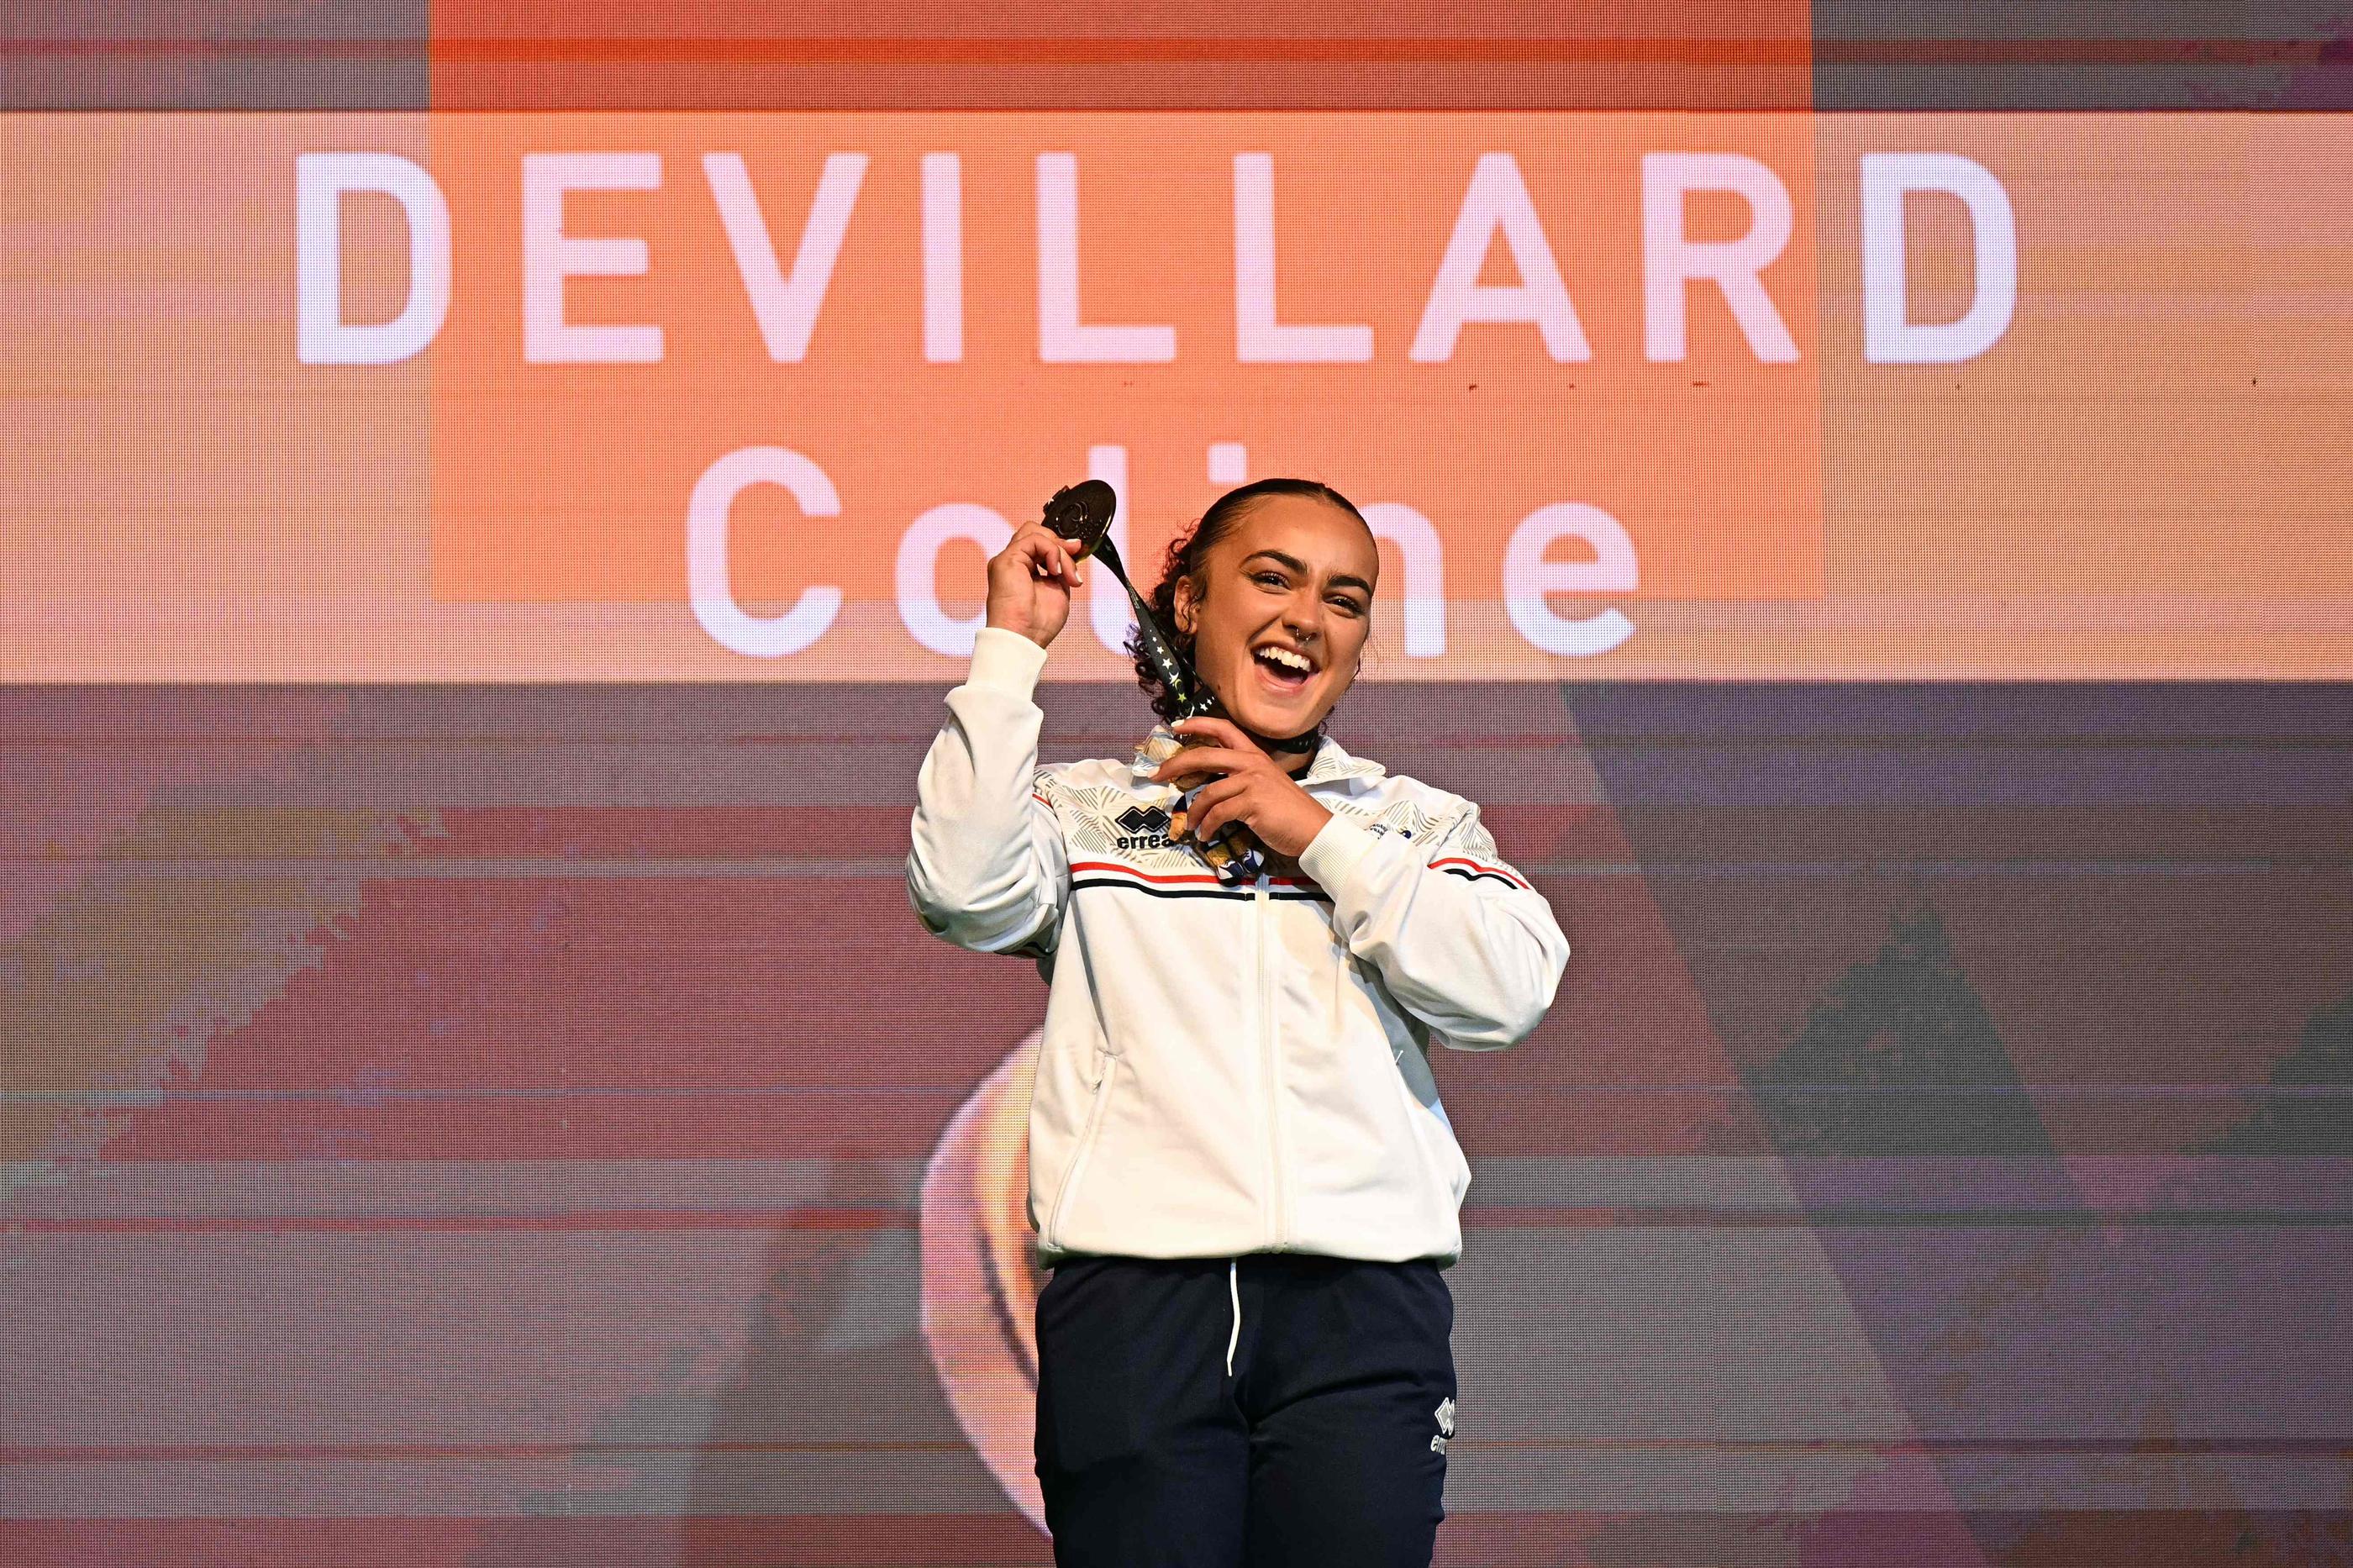 Coline Devillard a été sacrée championne d'Europe au saut ce samedi, pour la troisième fois de sa carrière. AFP/Gabriel Bouys